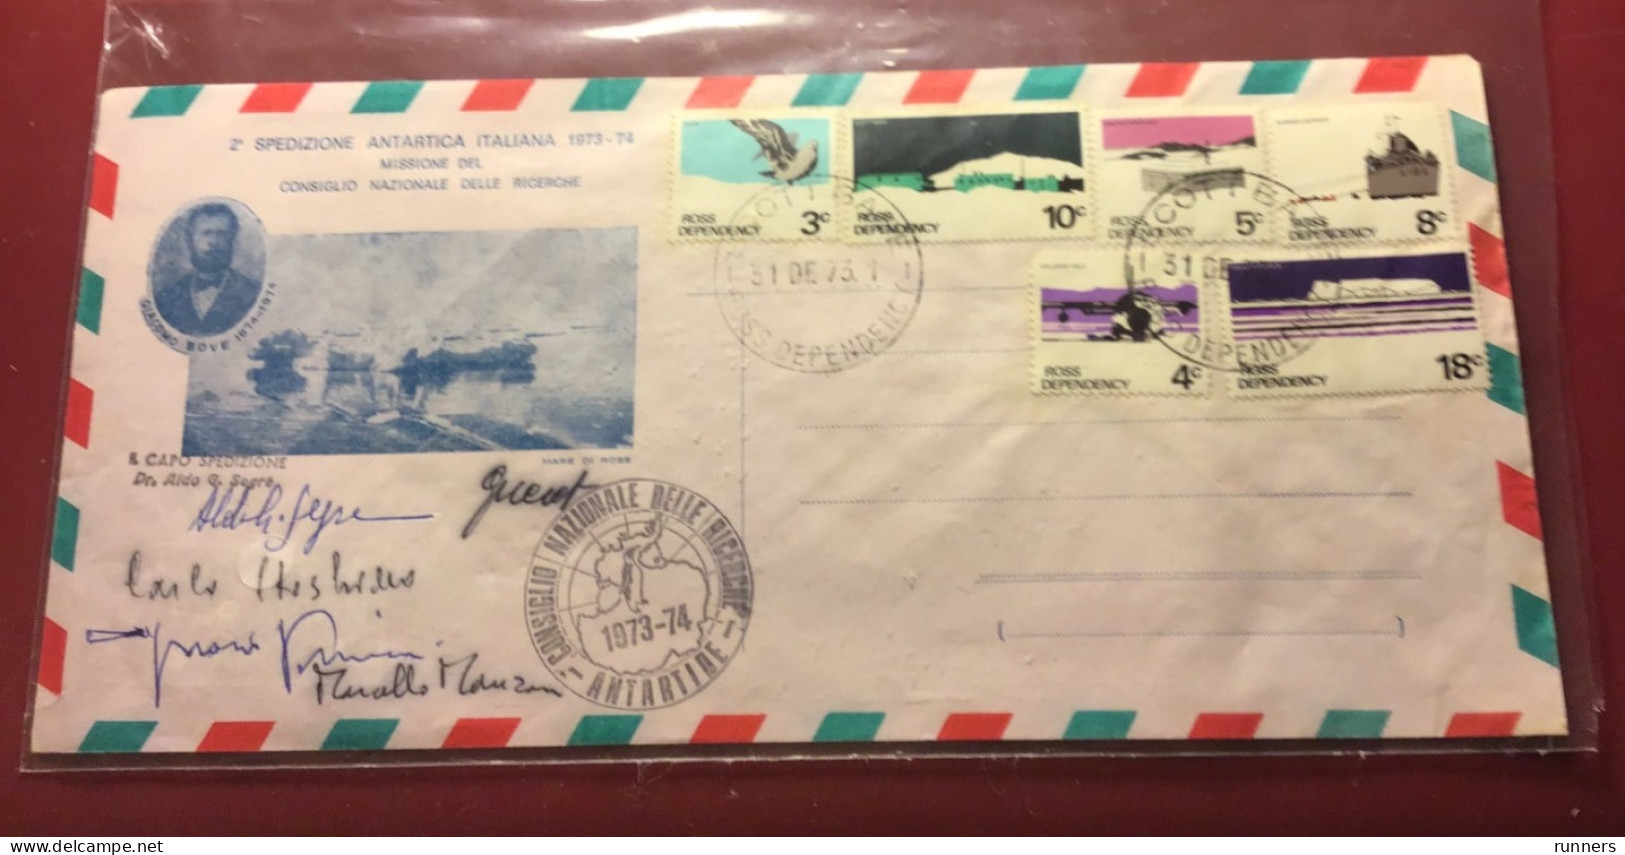 Spedizione Antartica Italiana 1974 CNR Prof Segre E Collaboratori - Lettres & Documents